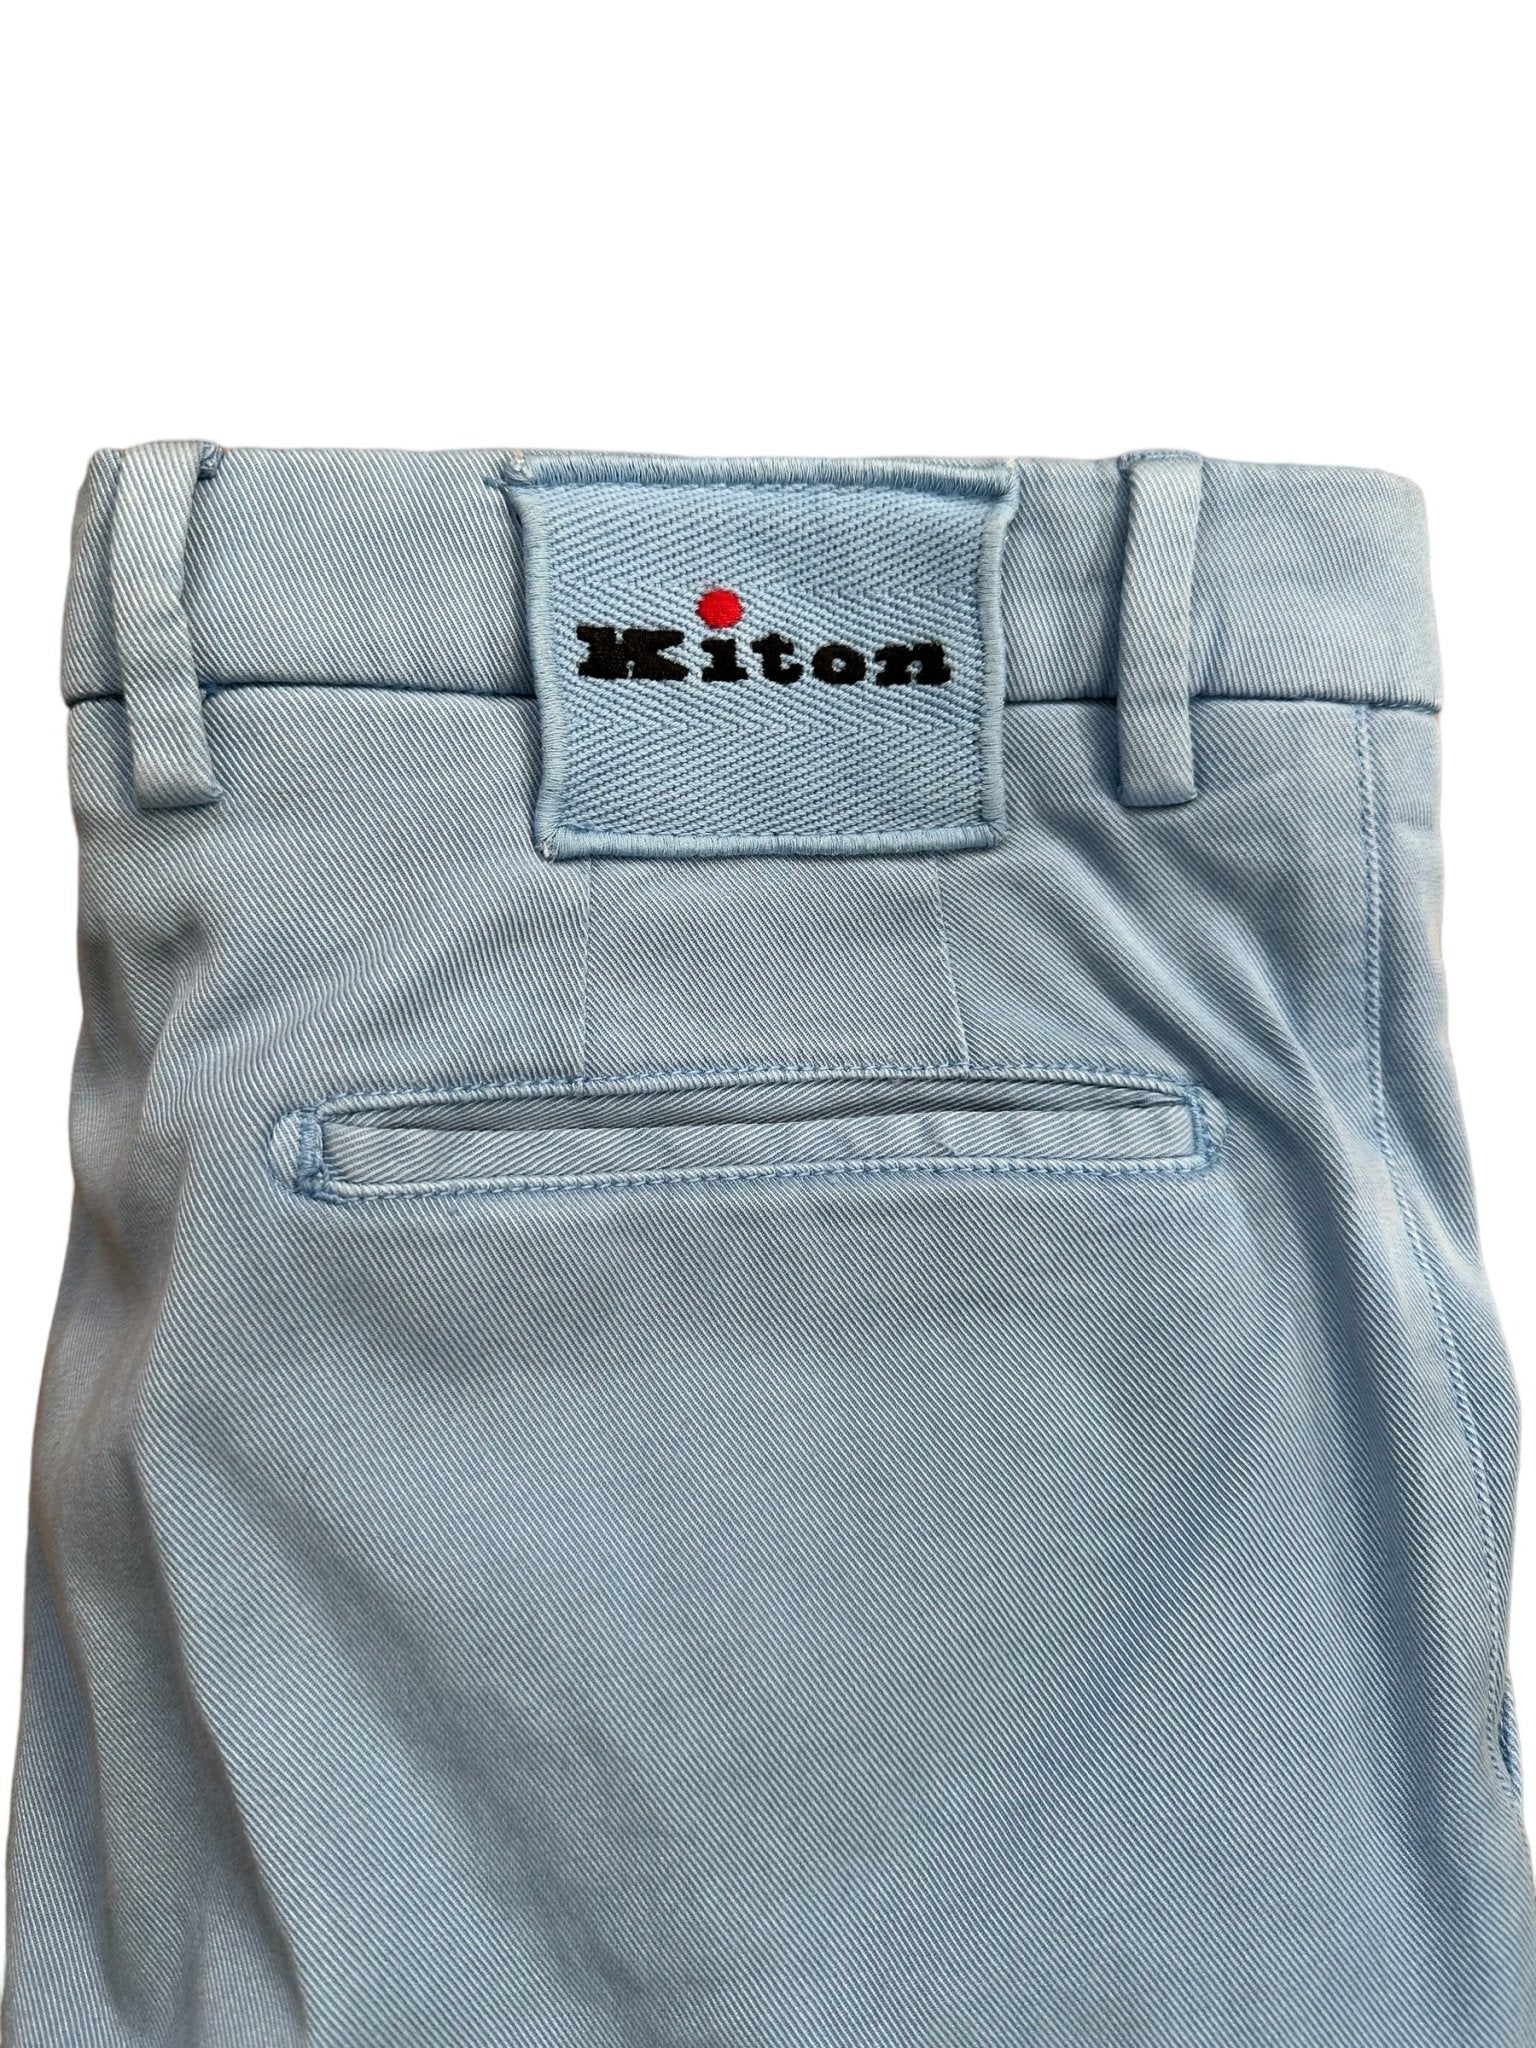 Kiton Hose - 24/7 Clothing